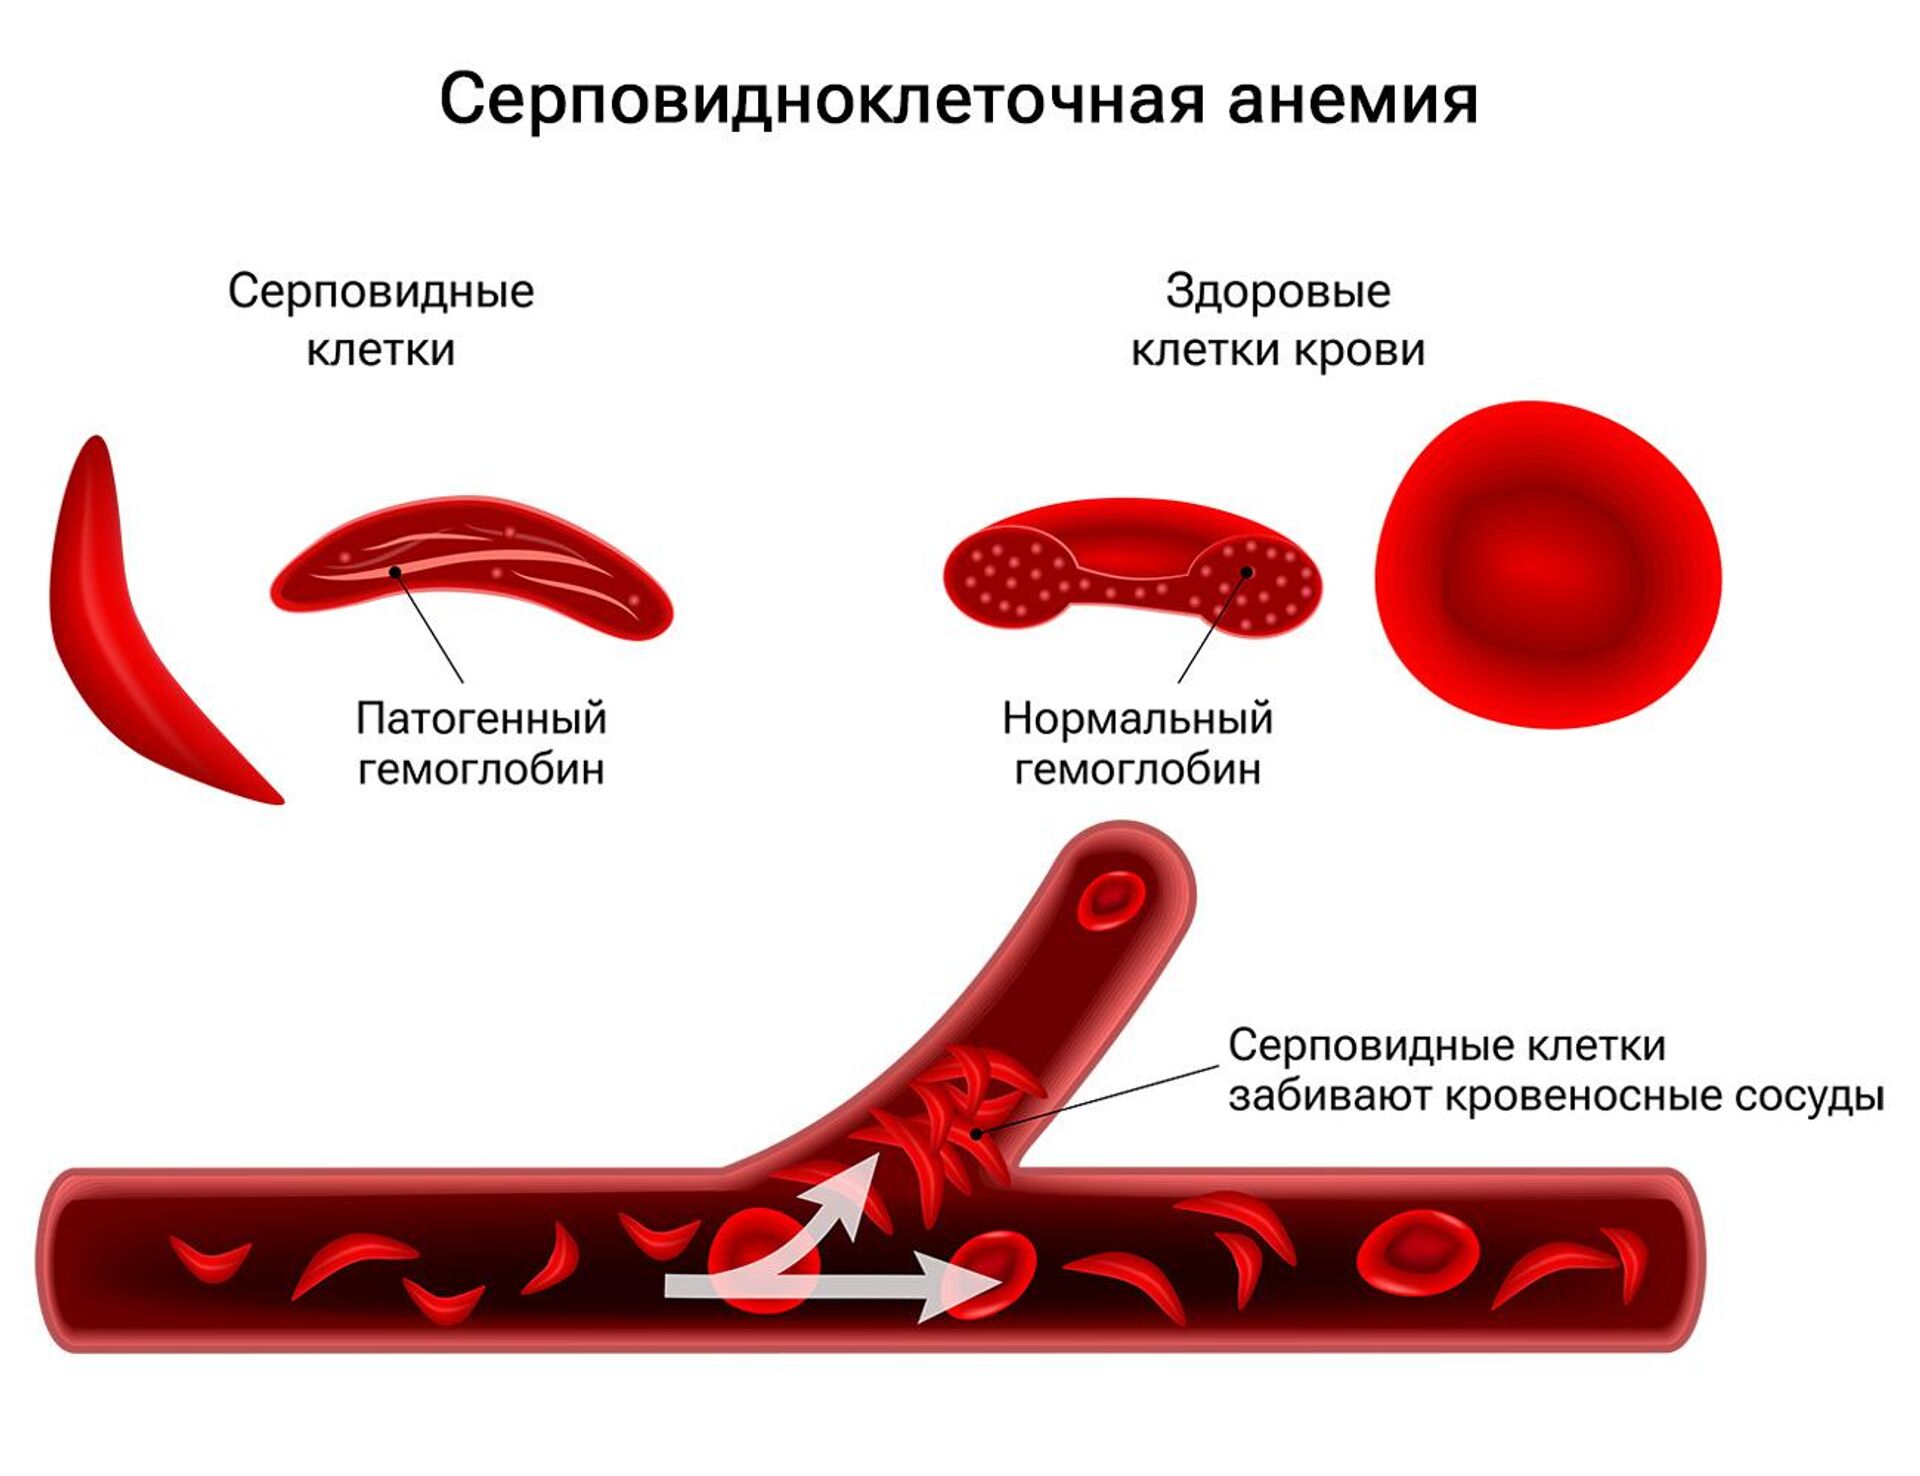 Ген серповидноклеточной анемии. Серповидноклеточная анемия.